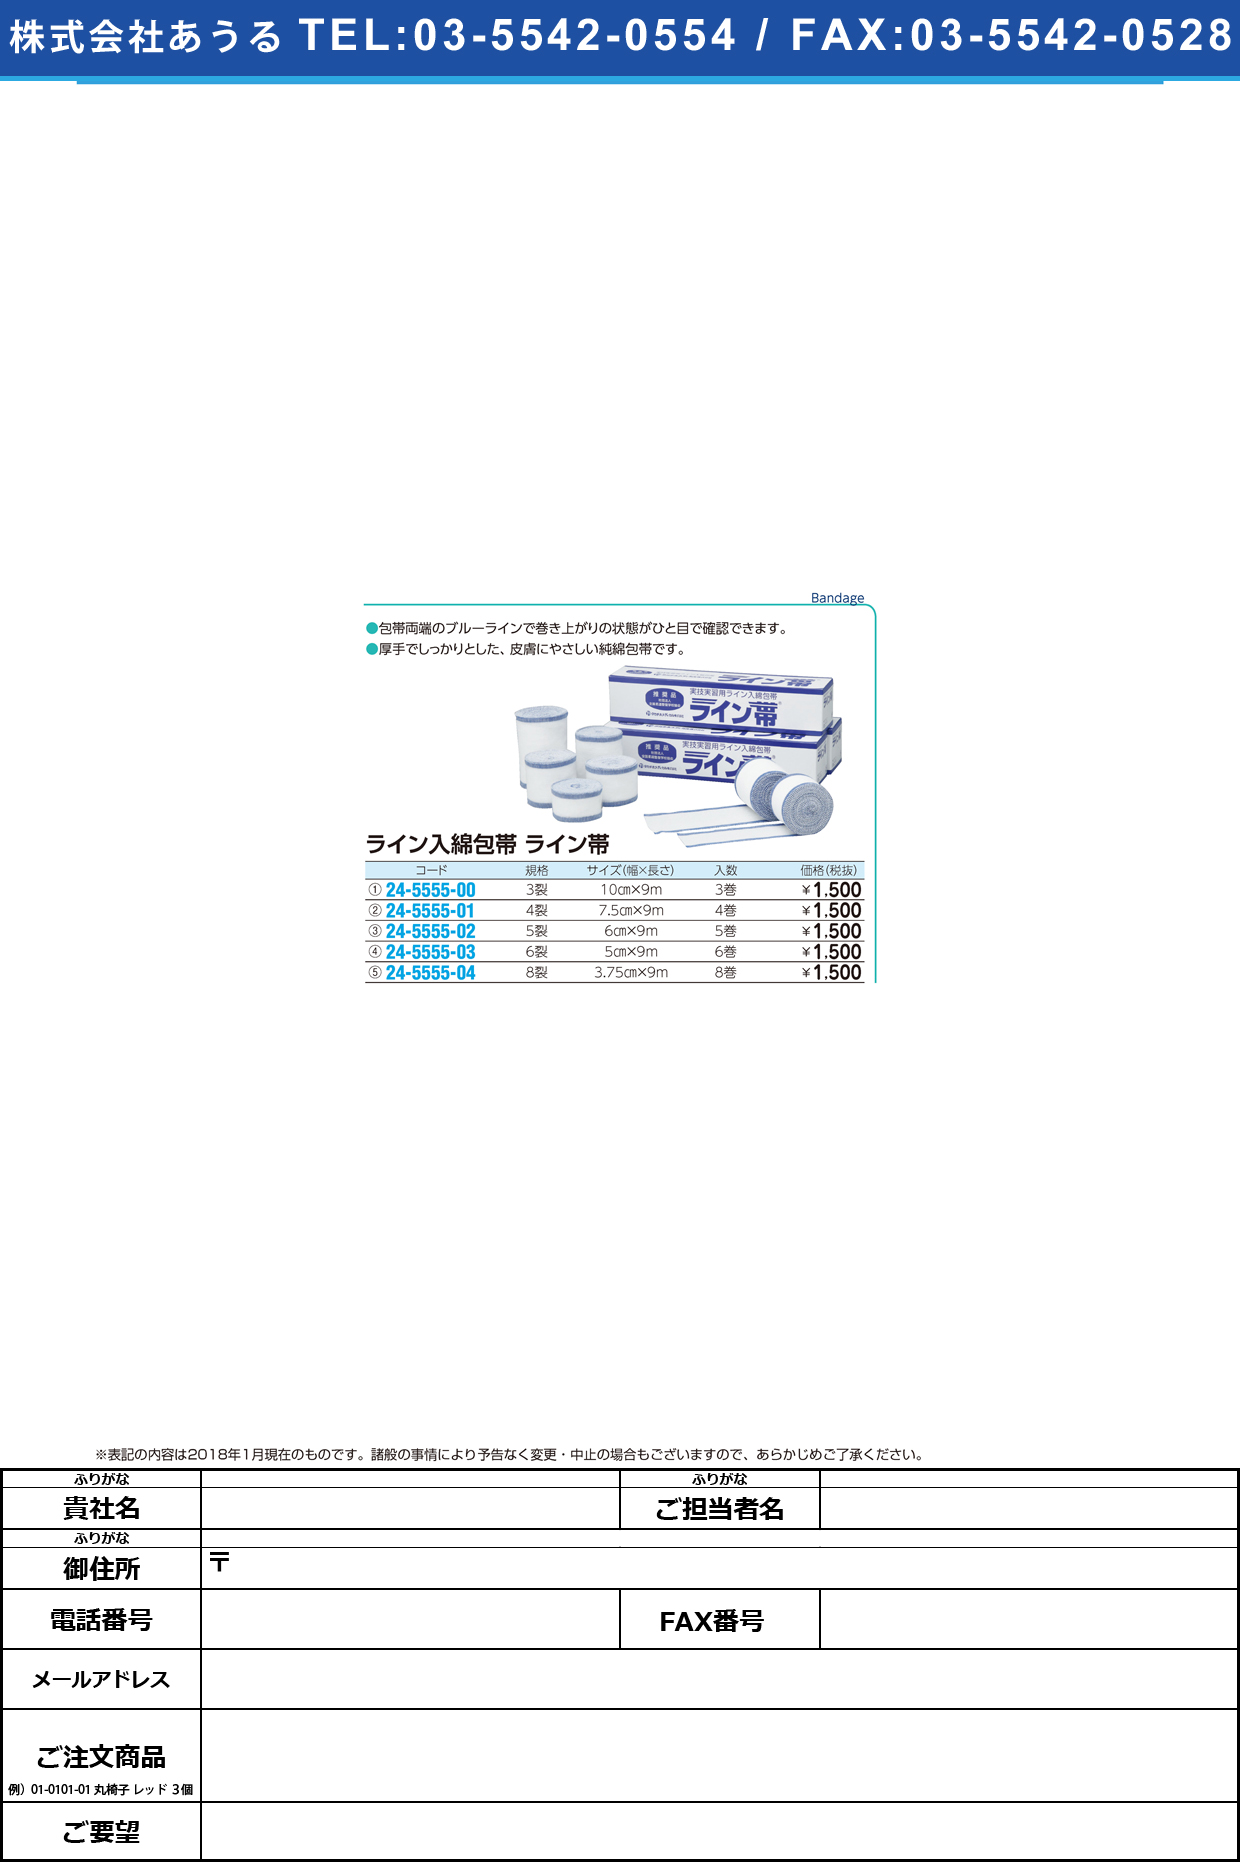 (24-5555-01)ライン帯ＳＰ４裂 TB-4R(7.5CMX9M)4ｶﾝ ﾗｲﾝﾀｲSP4ﾚﾂ【1箱単位】【2019年カタログ商品】